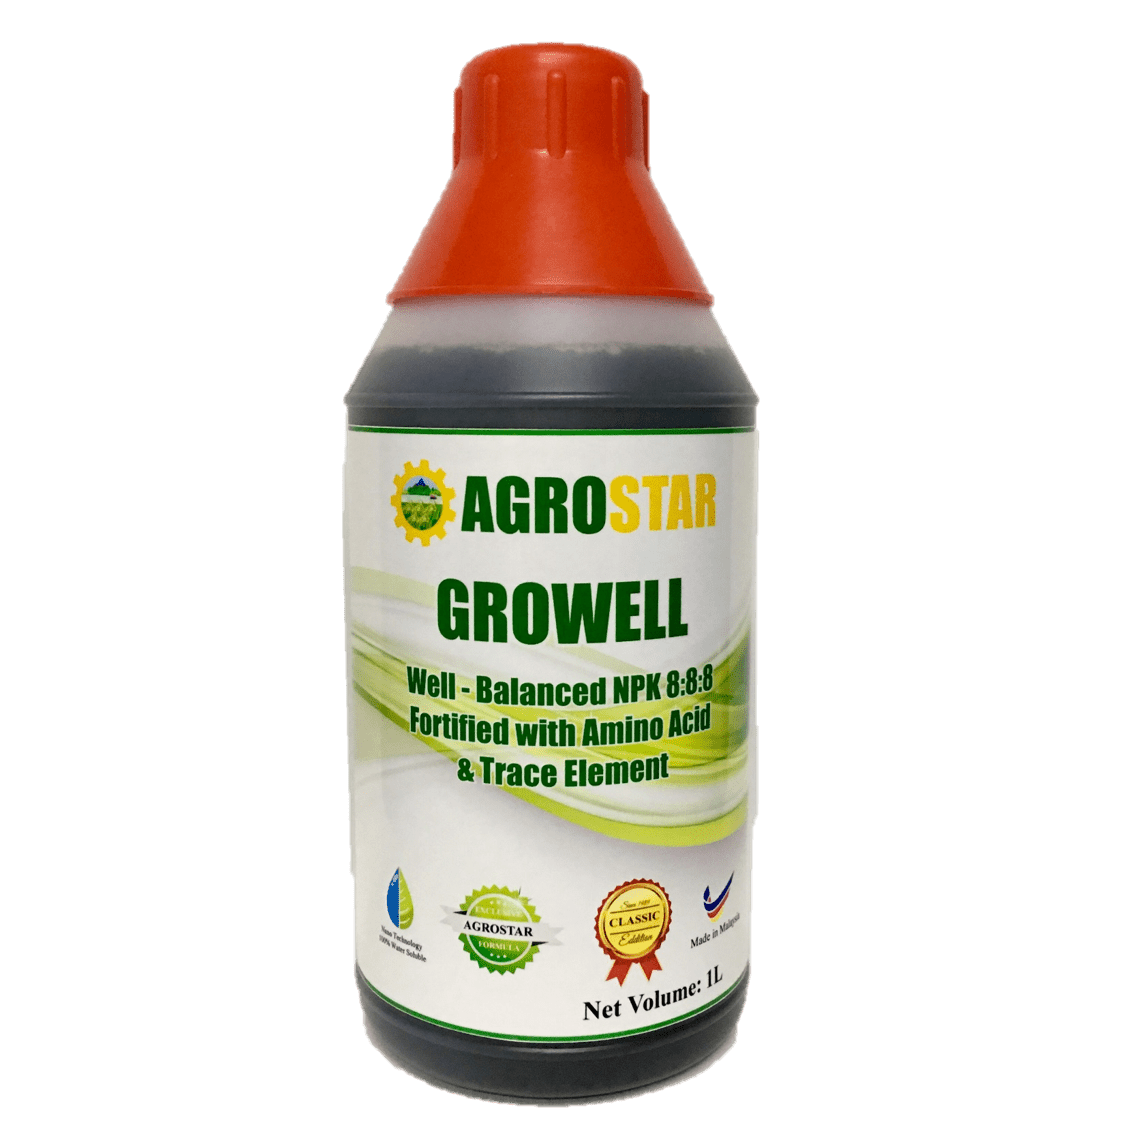 Agrostar Growell - Farm Doktor